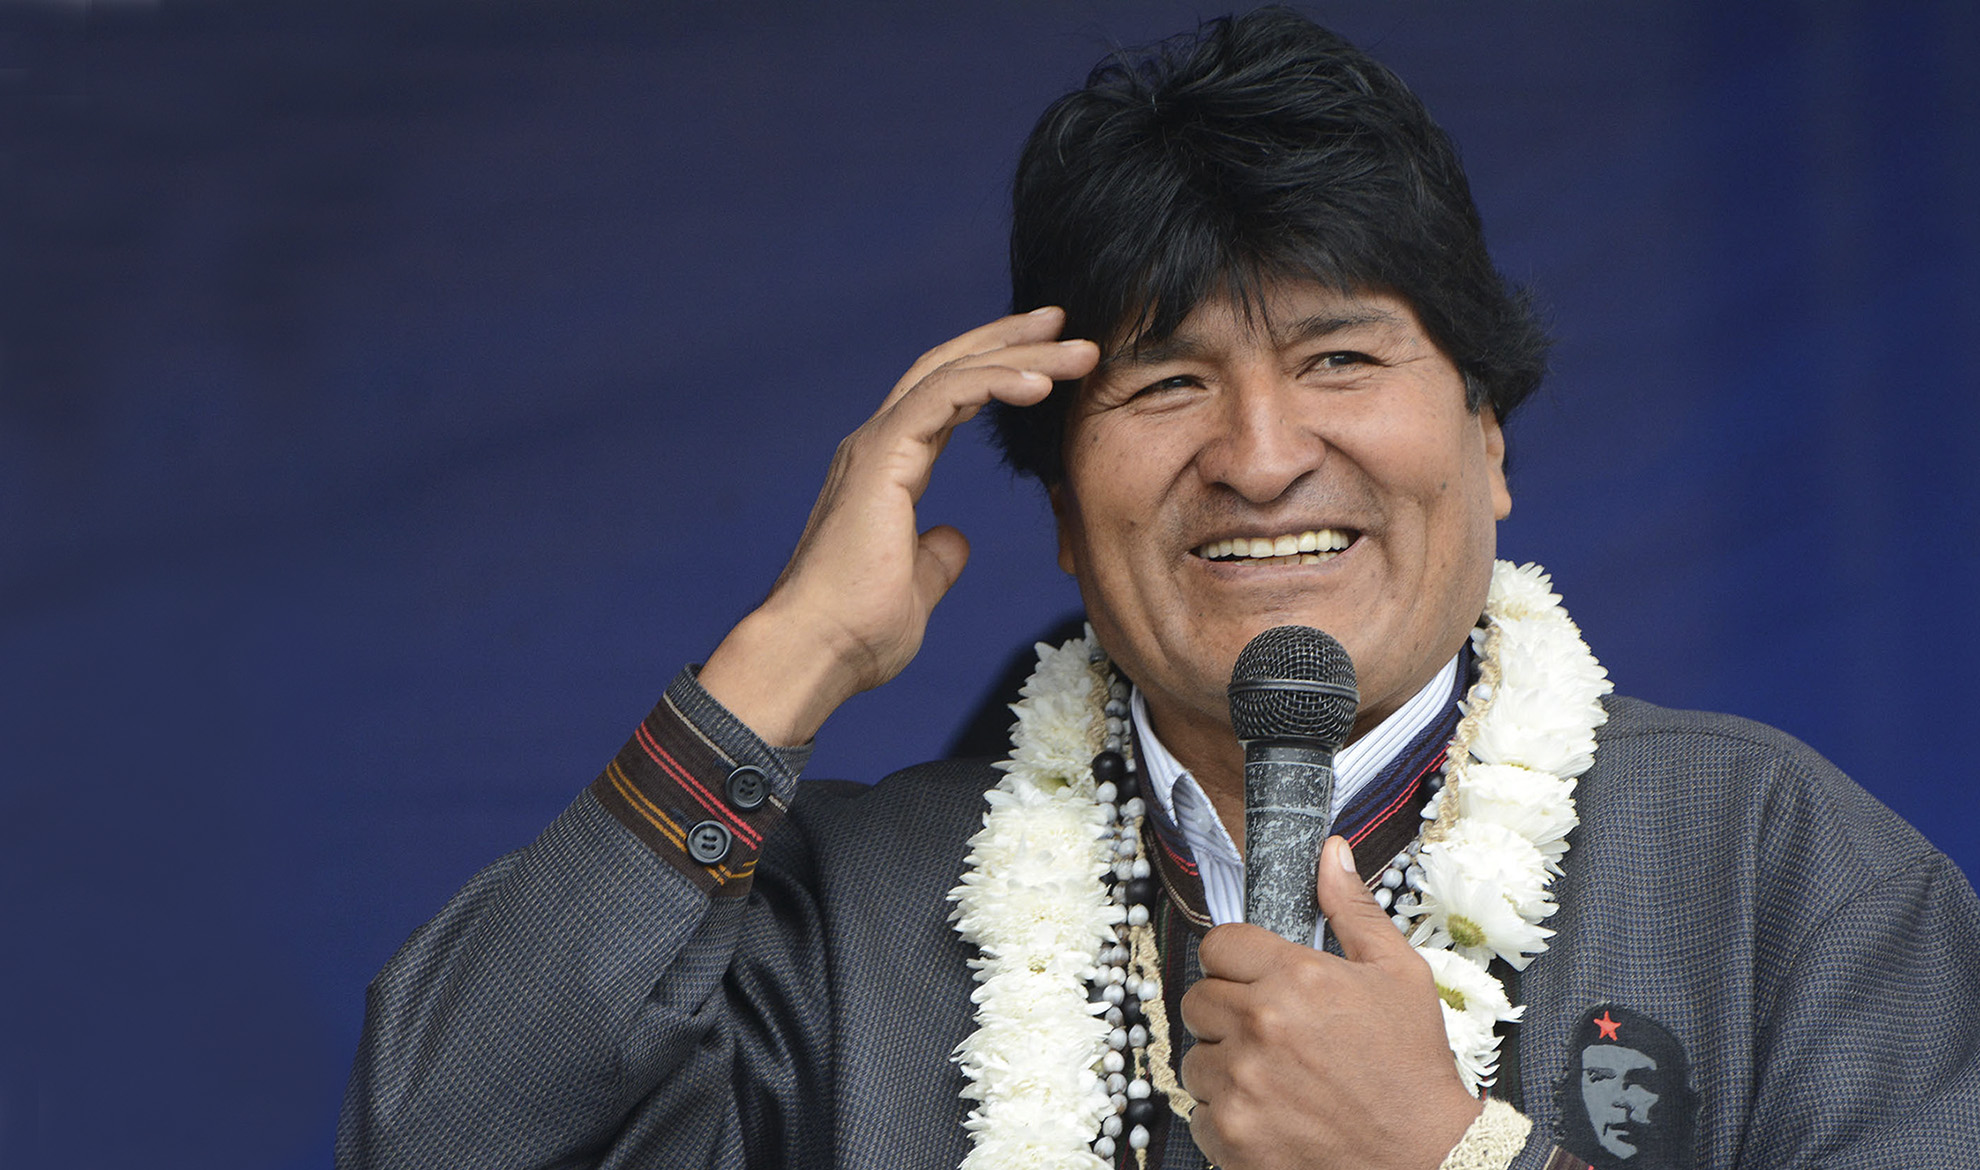 Evo Morales en uno de sus discursos en la ciudad de Cochabamba - Bolivia